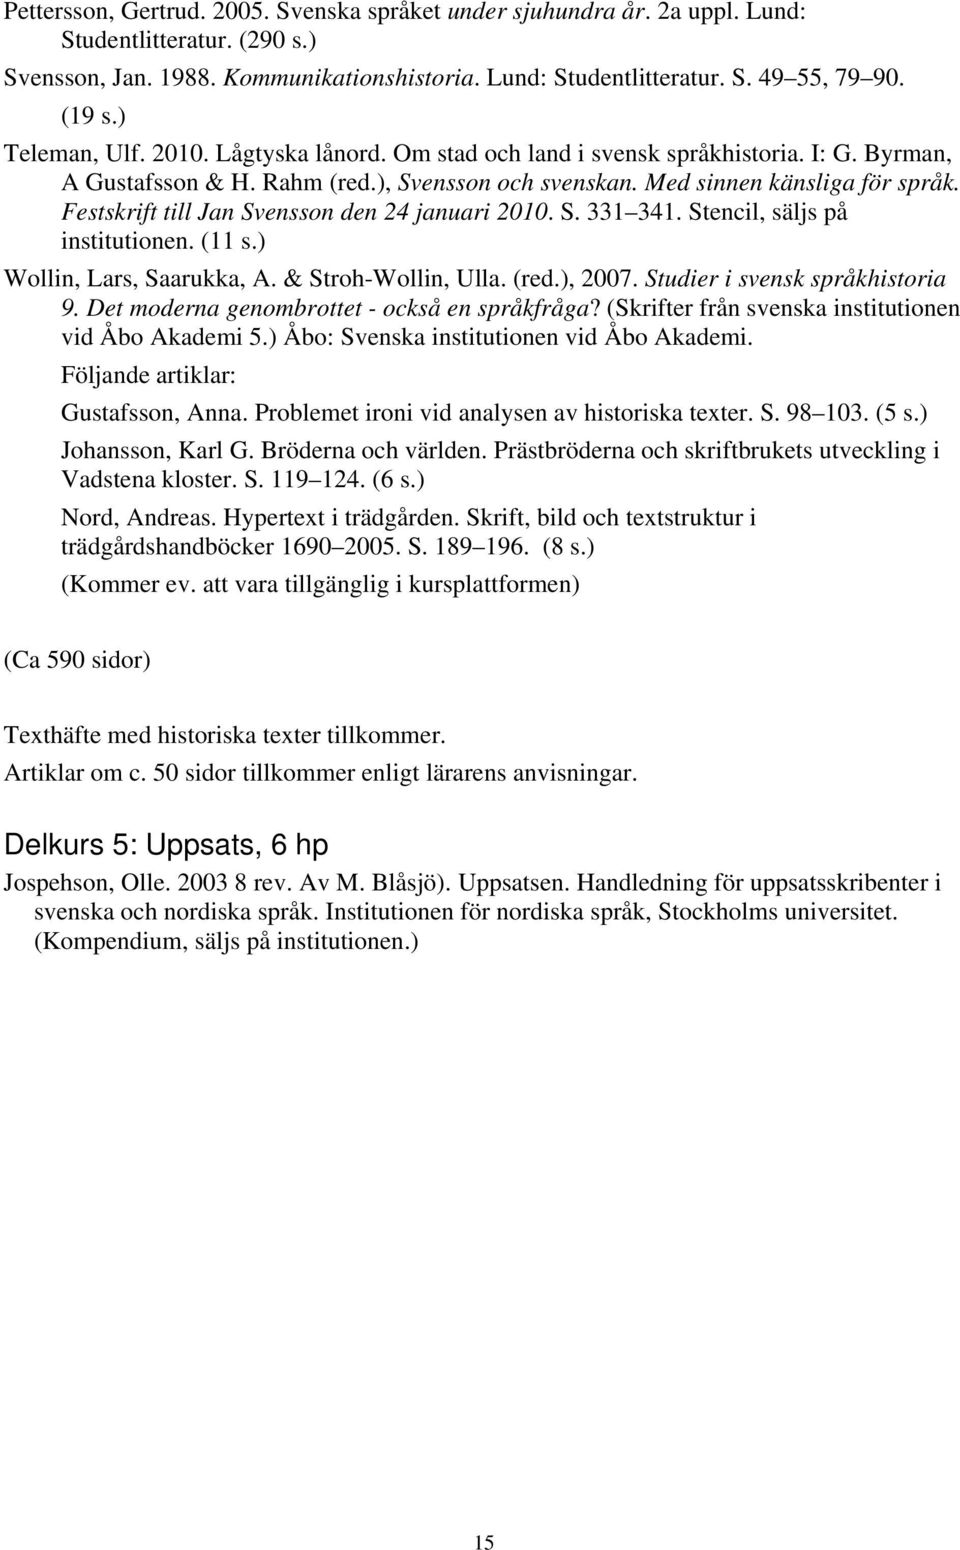 Festskrift till Jan Svensson den 24 januari 2010. S. 331 341. Stencil, säljs på institutionen. (11 s.) Wollin, Lars, Saarukka, A. & Stroh-Wollin, Ulla. (red.), 2007. Studier i svensk språkhistoria 9.